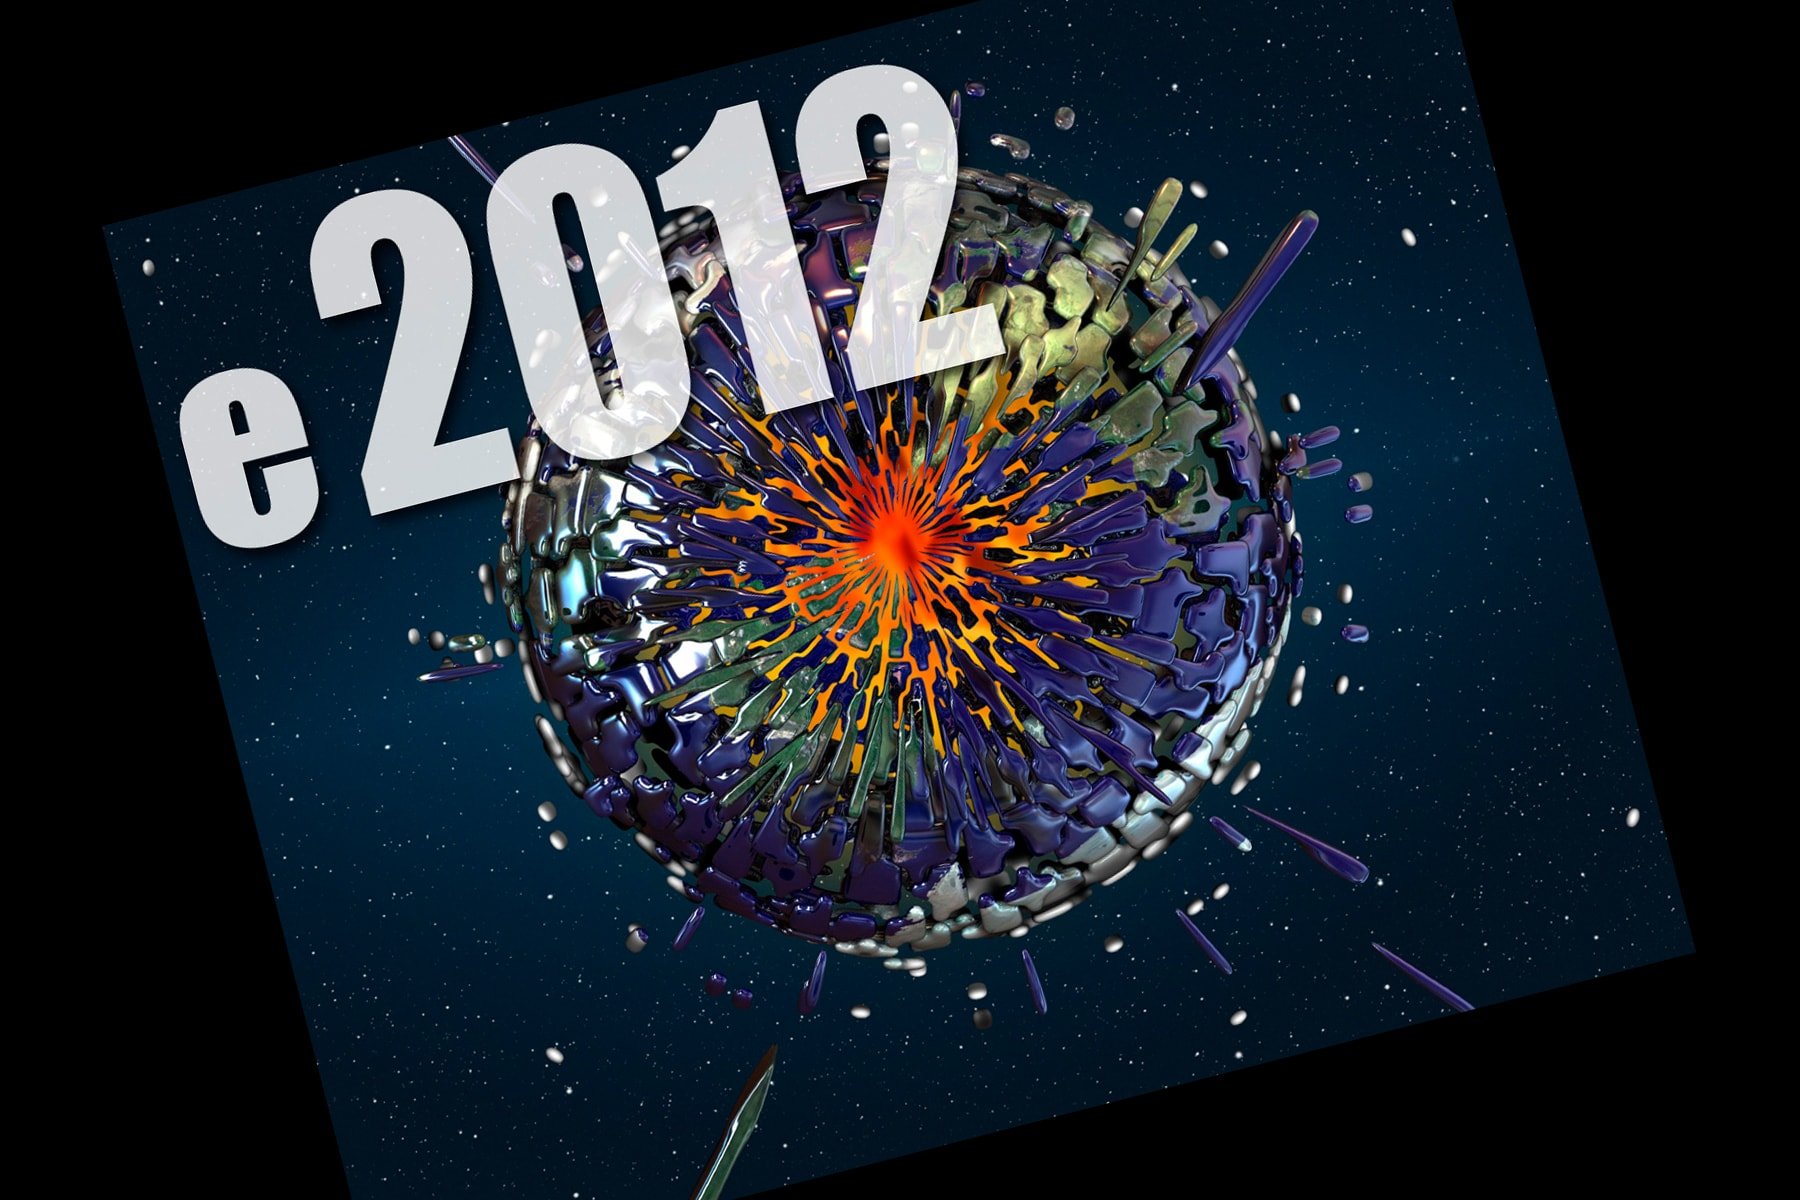 Serie e2012 - Agosto 2011 a Agosto 2012